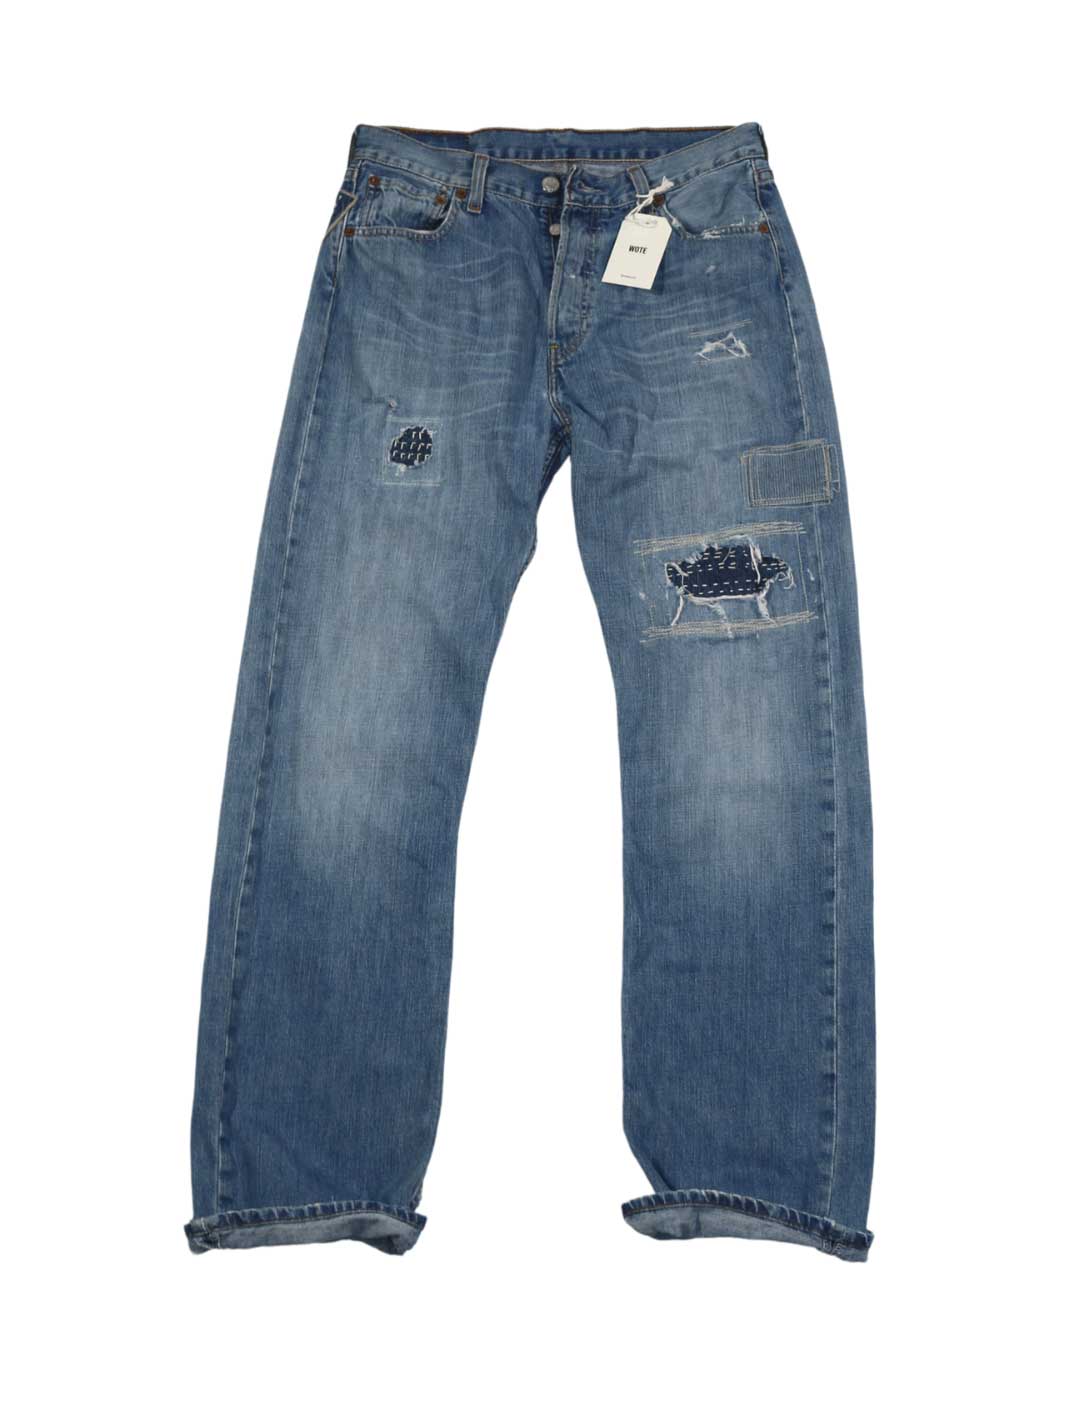 Herren Vintage Denim hellblaue Waschung Größe 30/32 mit diversen Repair Stitchings an beiden Beinen 100% Baumwolle upcycling